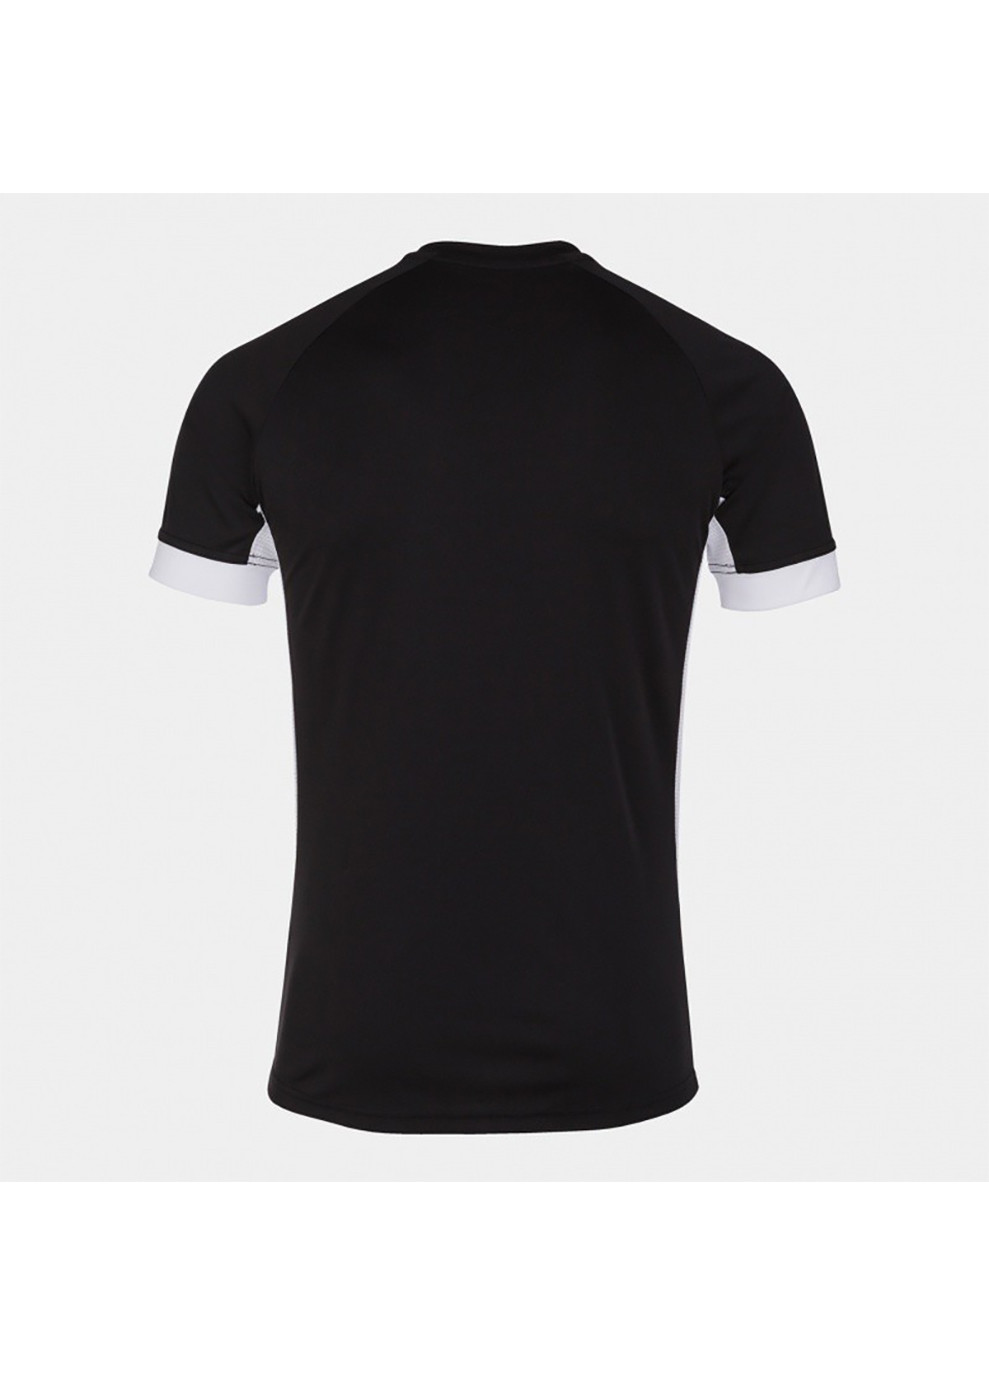 Черная футболка supernova ii t-shirt back-white s/s черный Joma